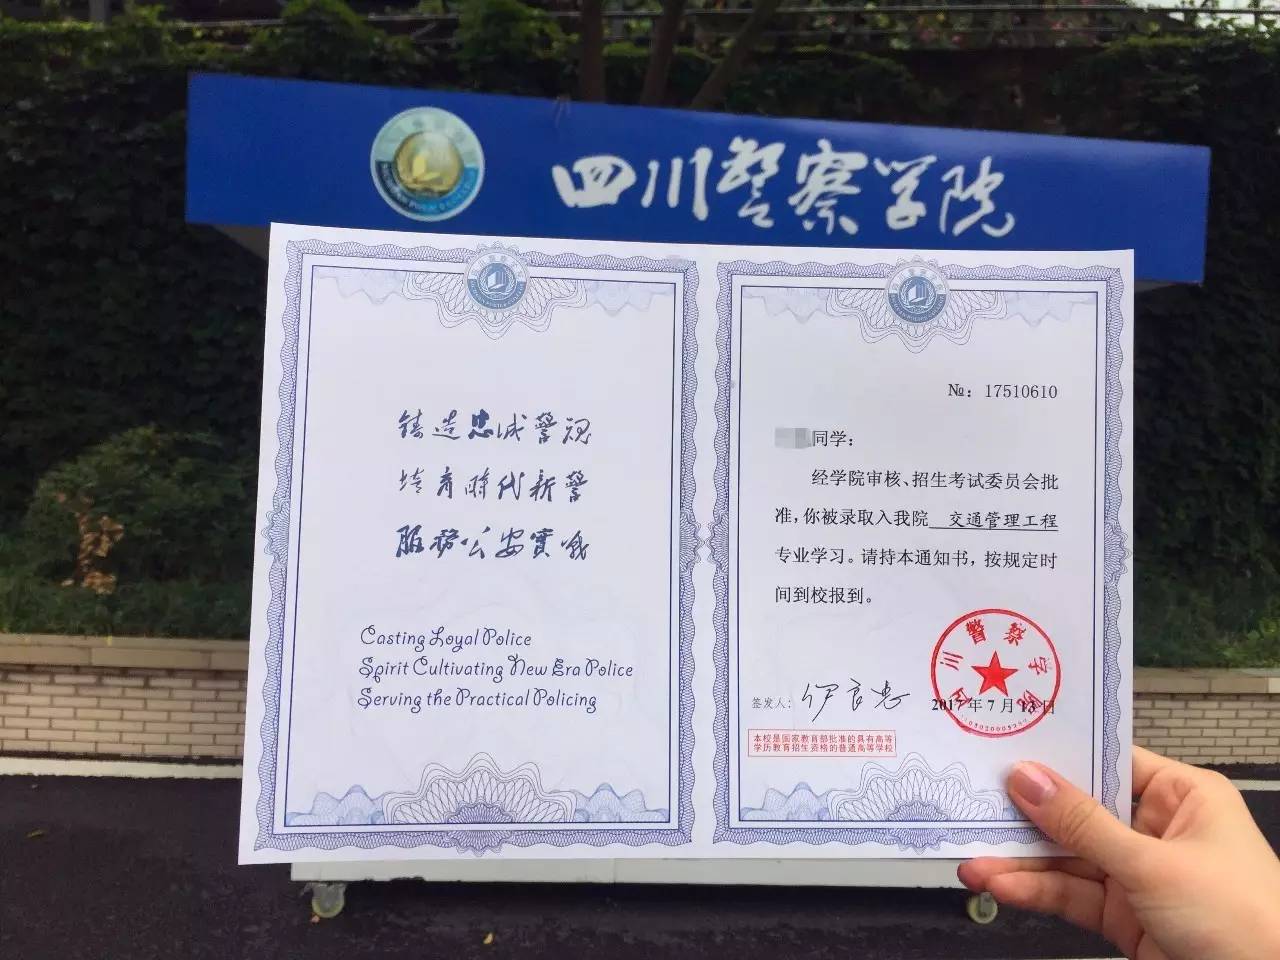 2、绵阳大学毕业证封面图：谁有空白材料大学毕业证？ ? ?要上色！ ！ ！ 